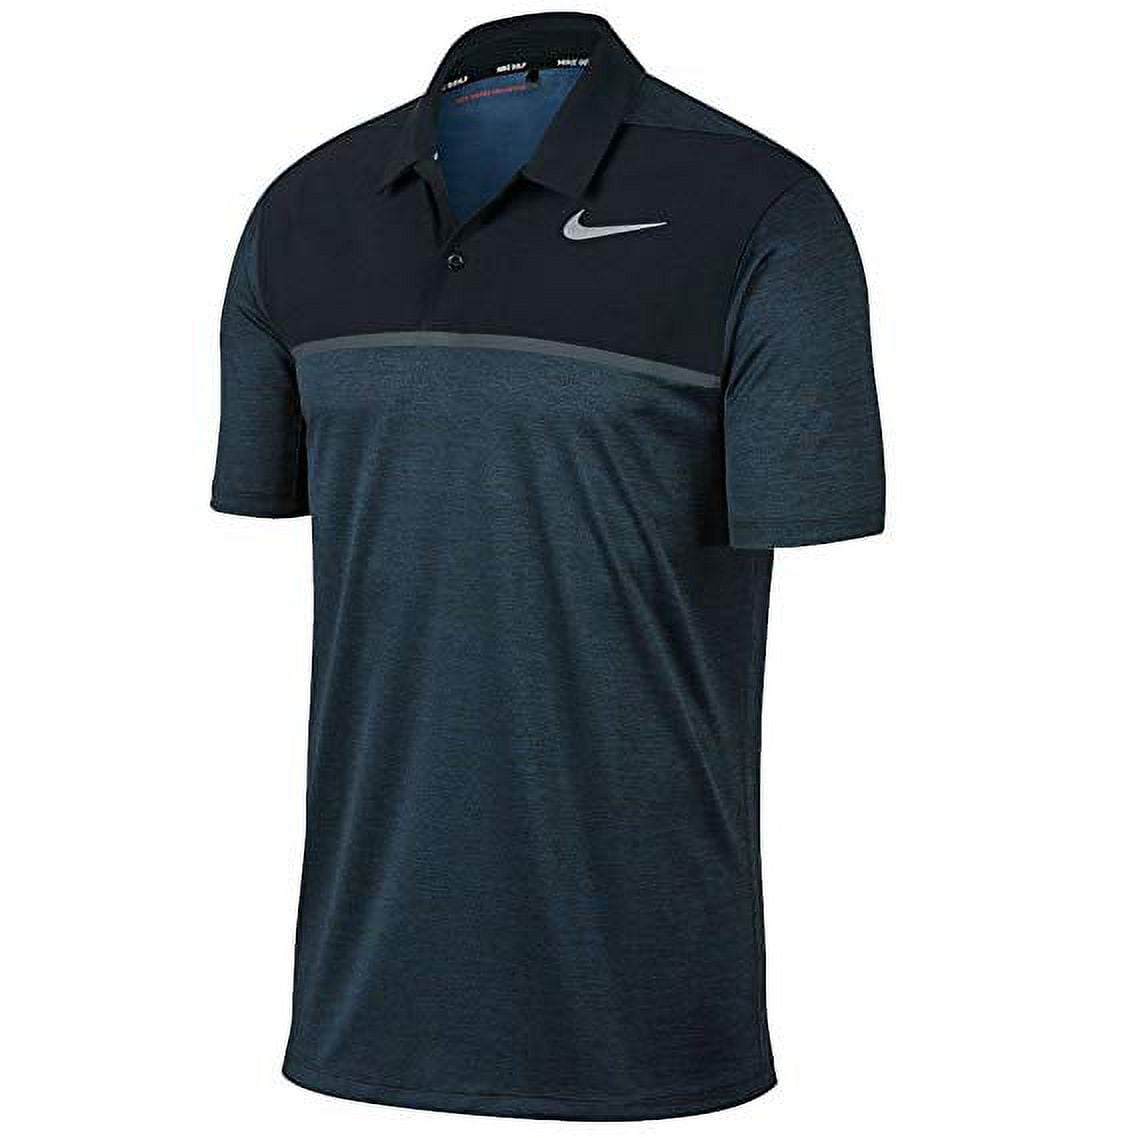 global Den sandsynlige Diagnose Nike Golf TW Tiger Woods Collection Dri-Fit Polo, Navy/Black, Medium -  Walmart.com